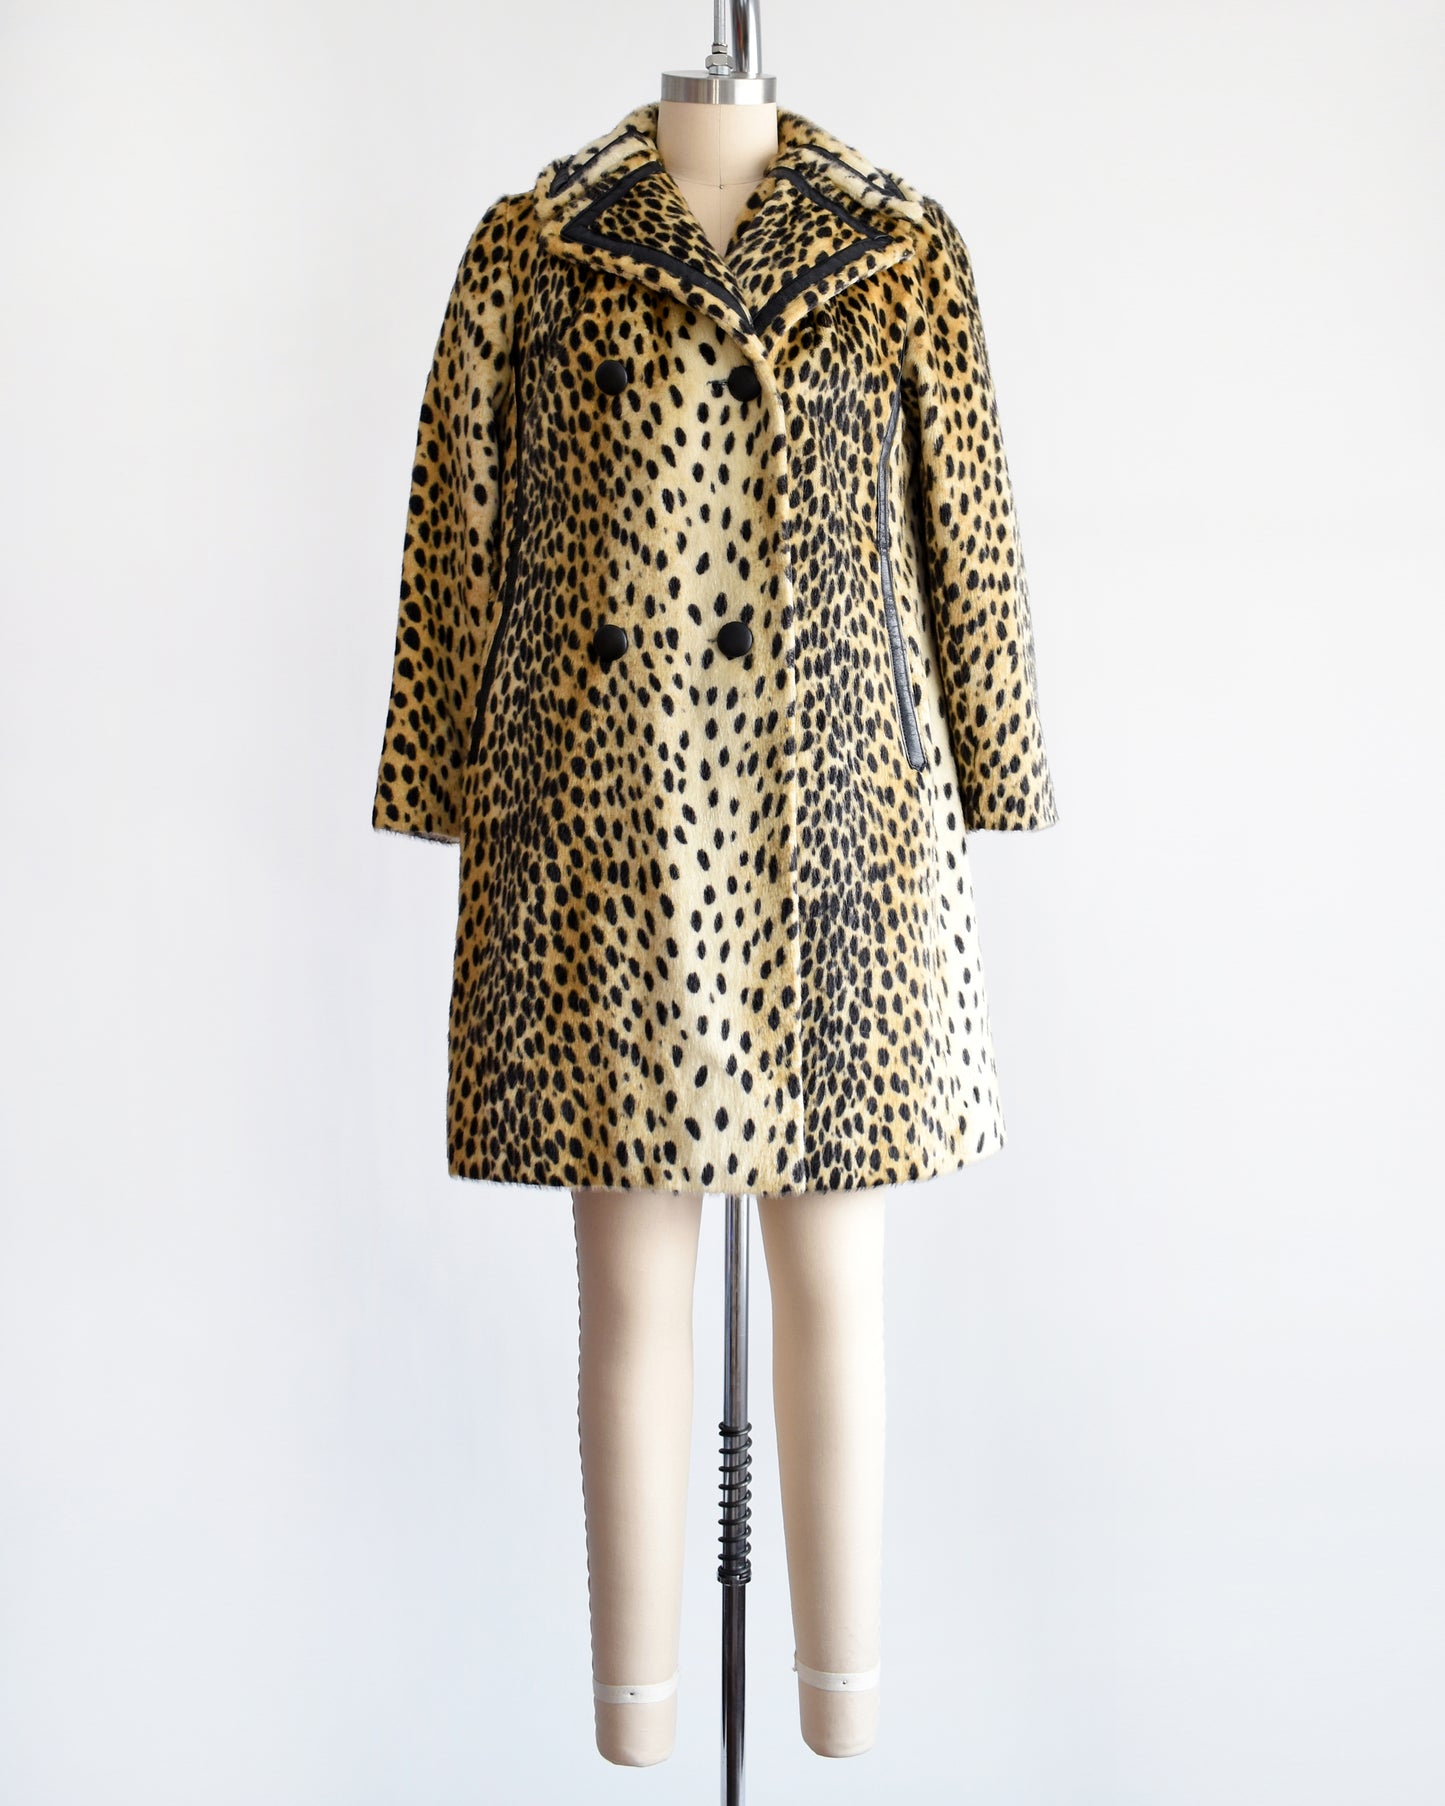 A faux fur cheetah print coat features golden faux fur with black spots and black faux leather trim